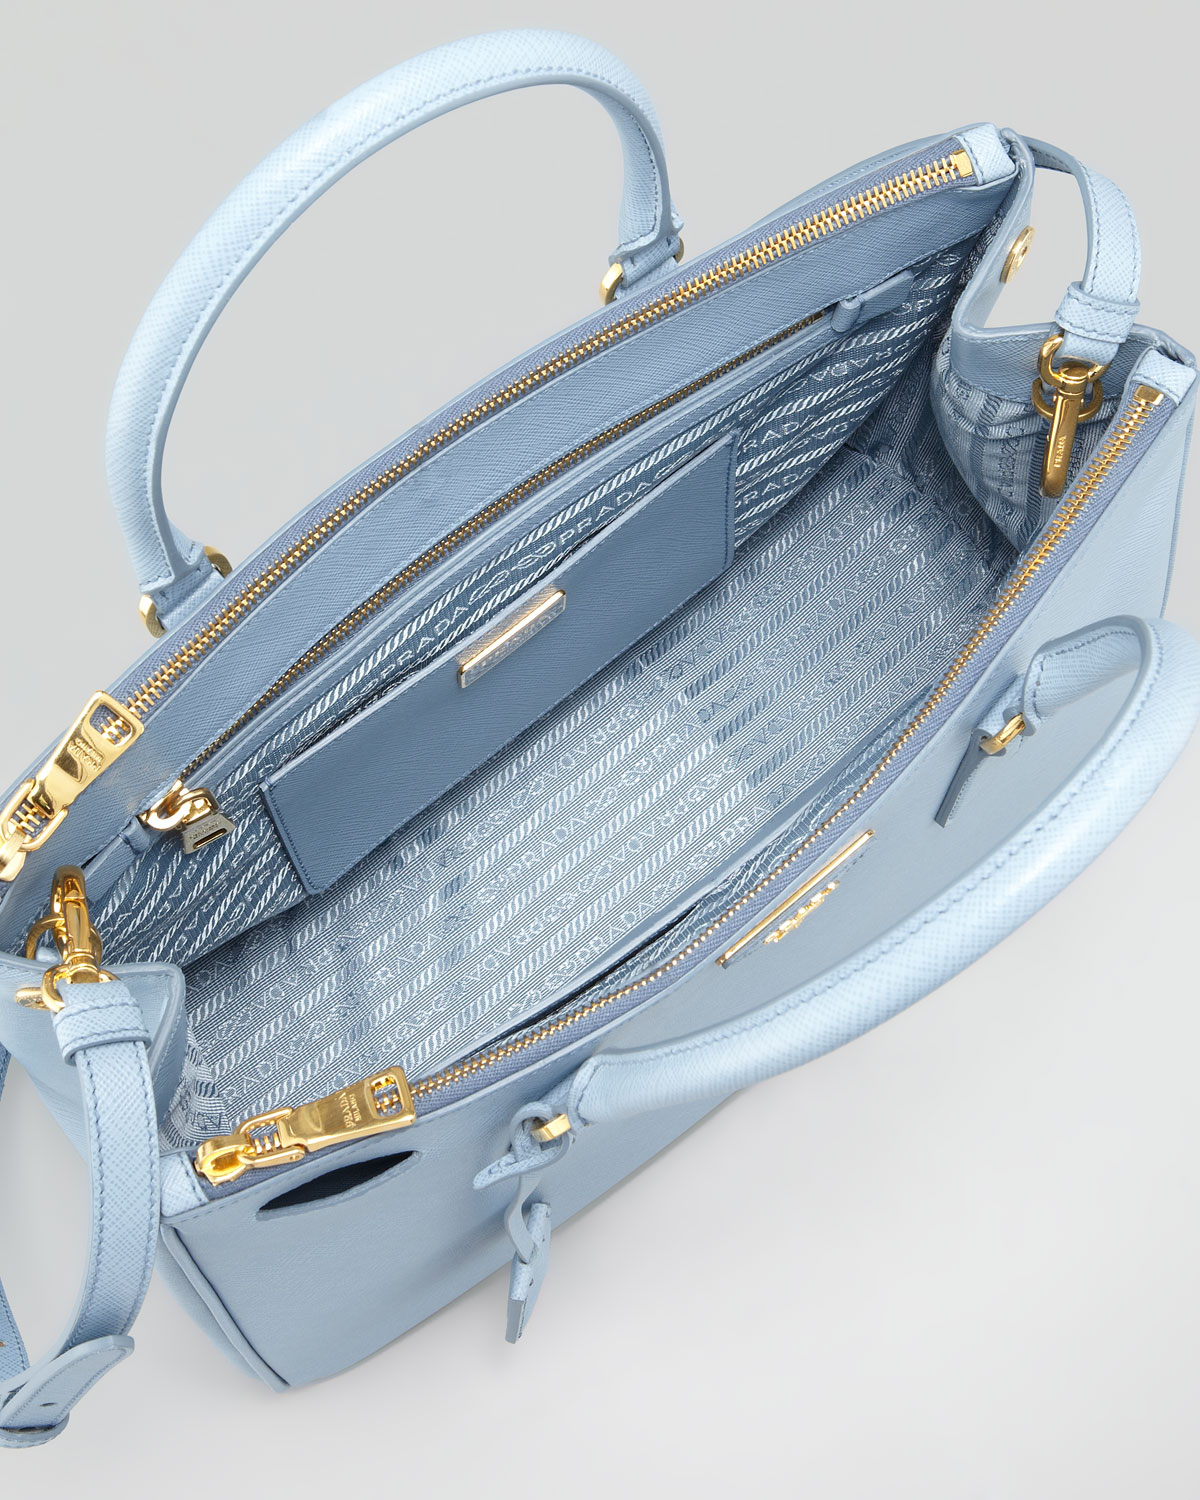 Prada Saffiano Small Doublezip Executive Tote Bag in Blue | Lyst